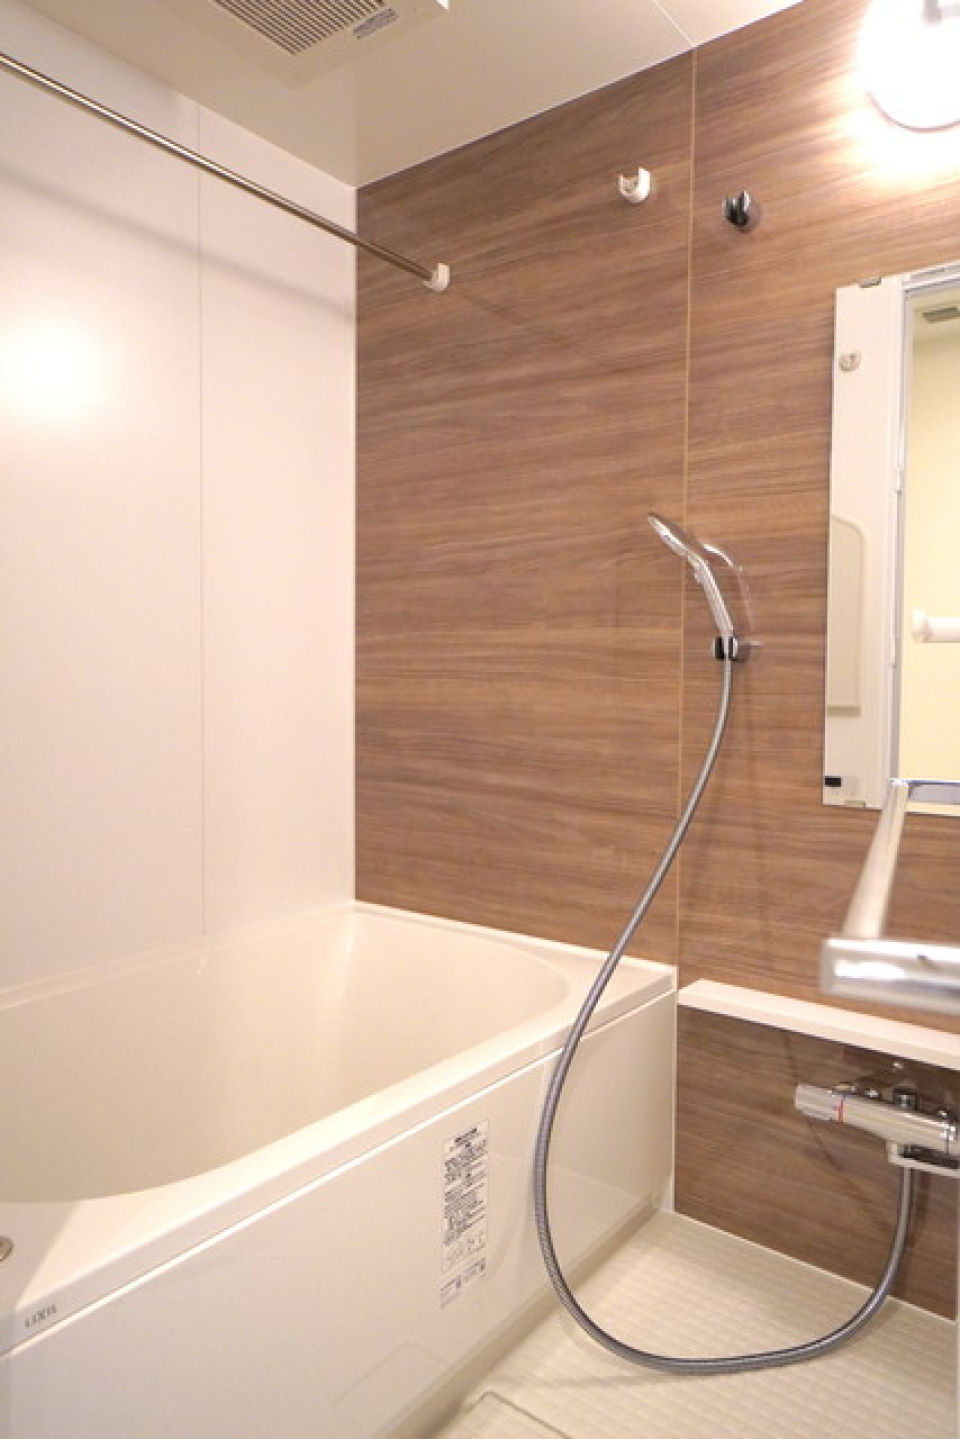 ナチュラルな木目調のパネルが導入されている浴室。※写真は同タイプ住戸です。